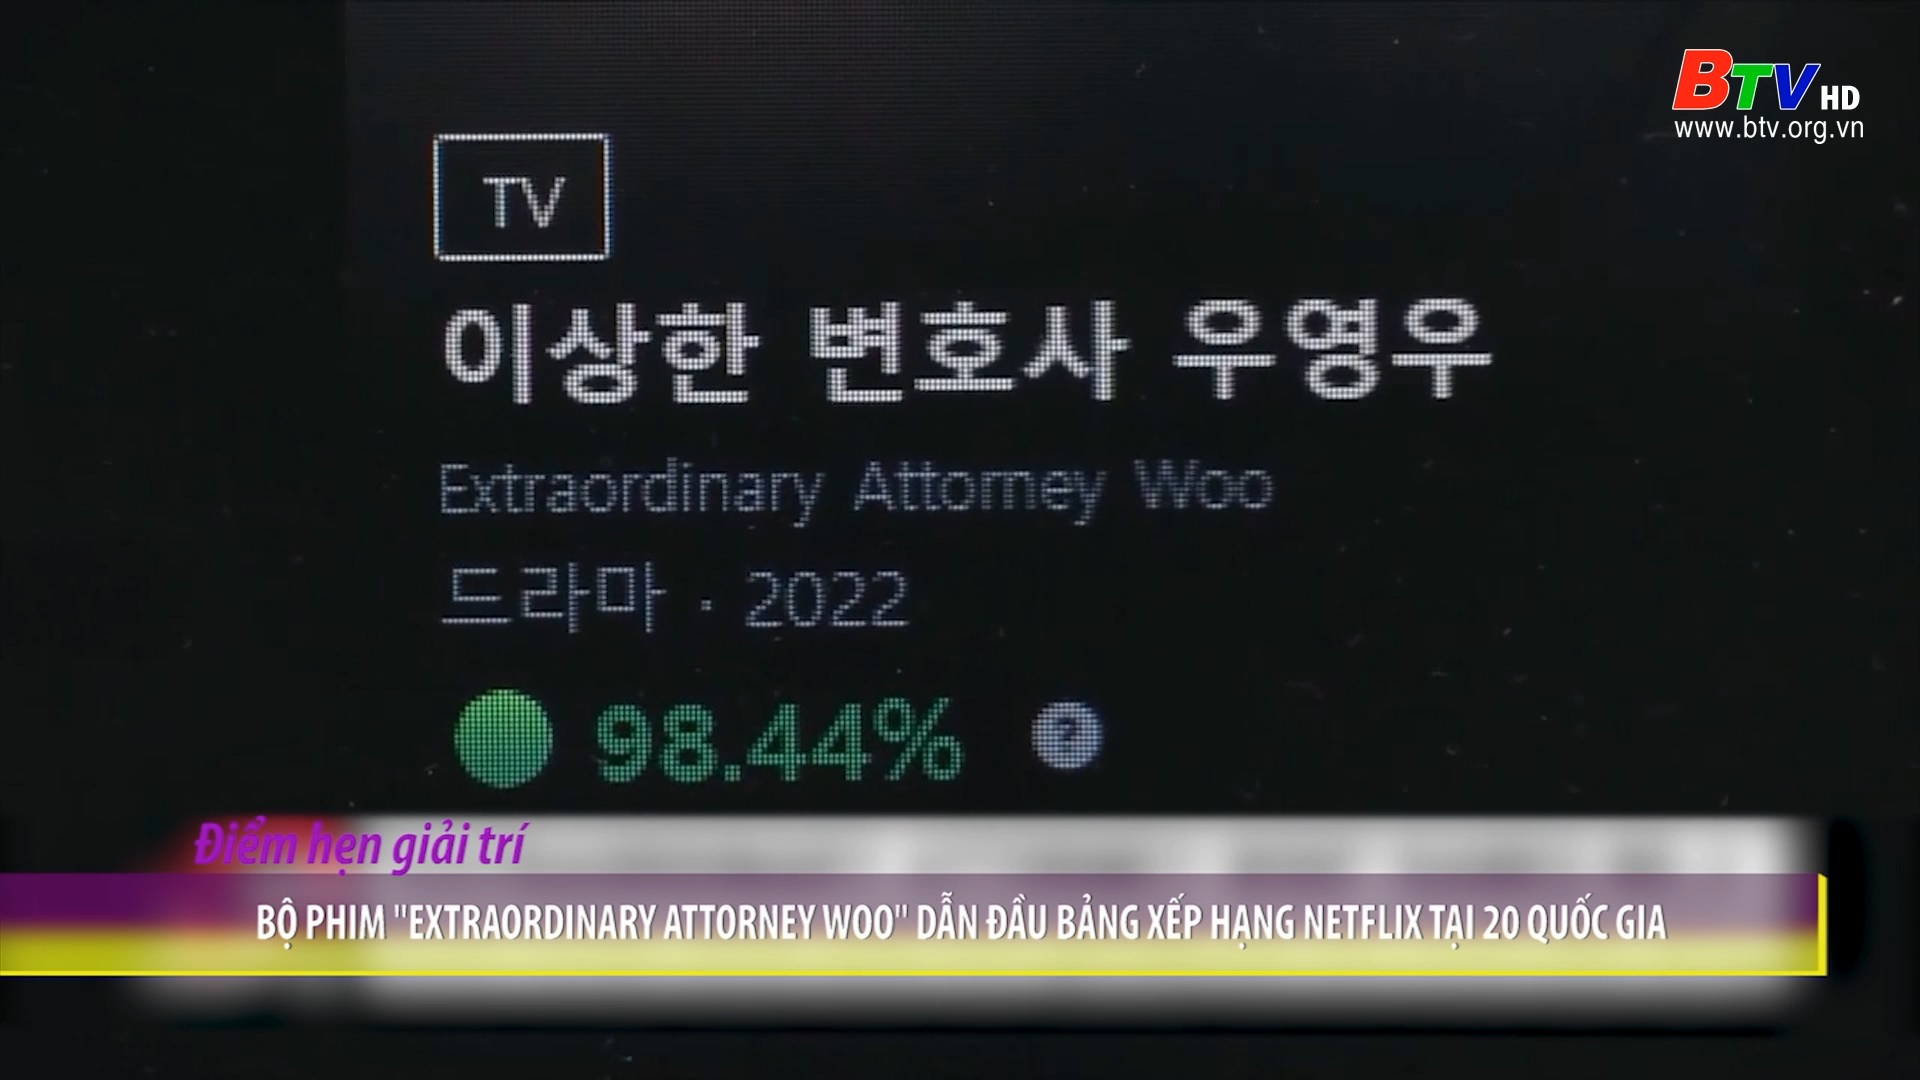 Bộ phim “Extraordinary Attorney Woo” dẫn đầu bảng xếp hạng Netflix tại 20 quốc gia